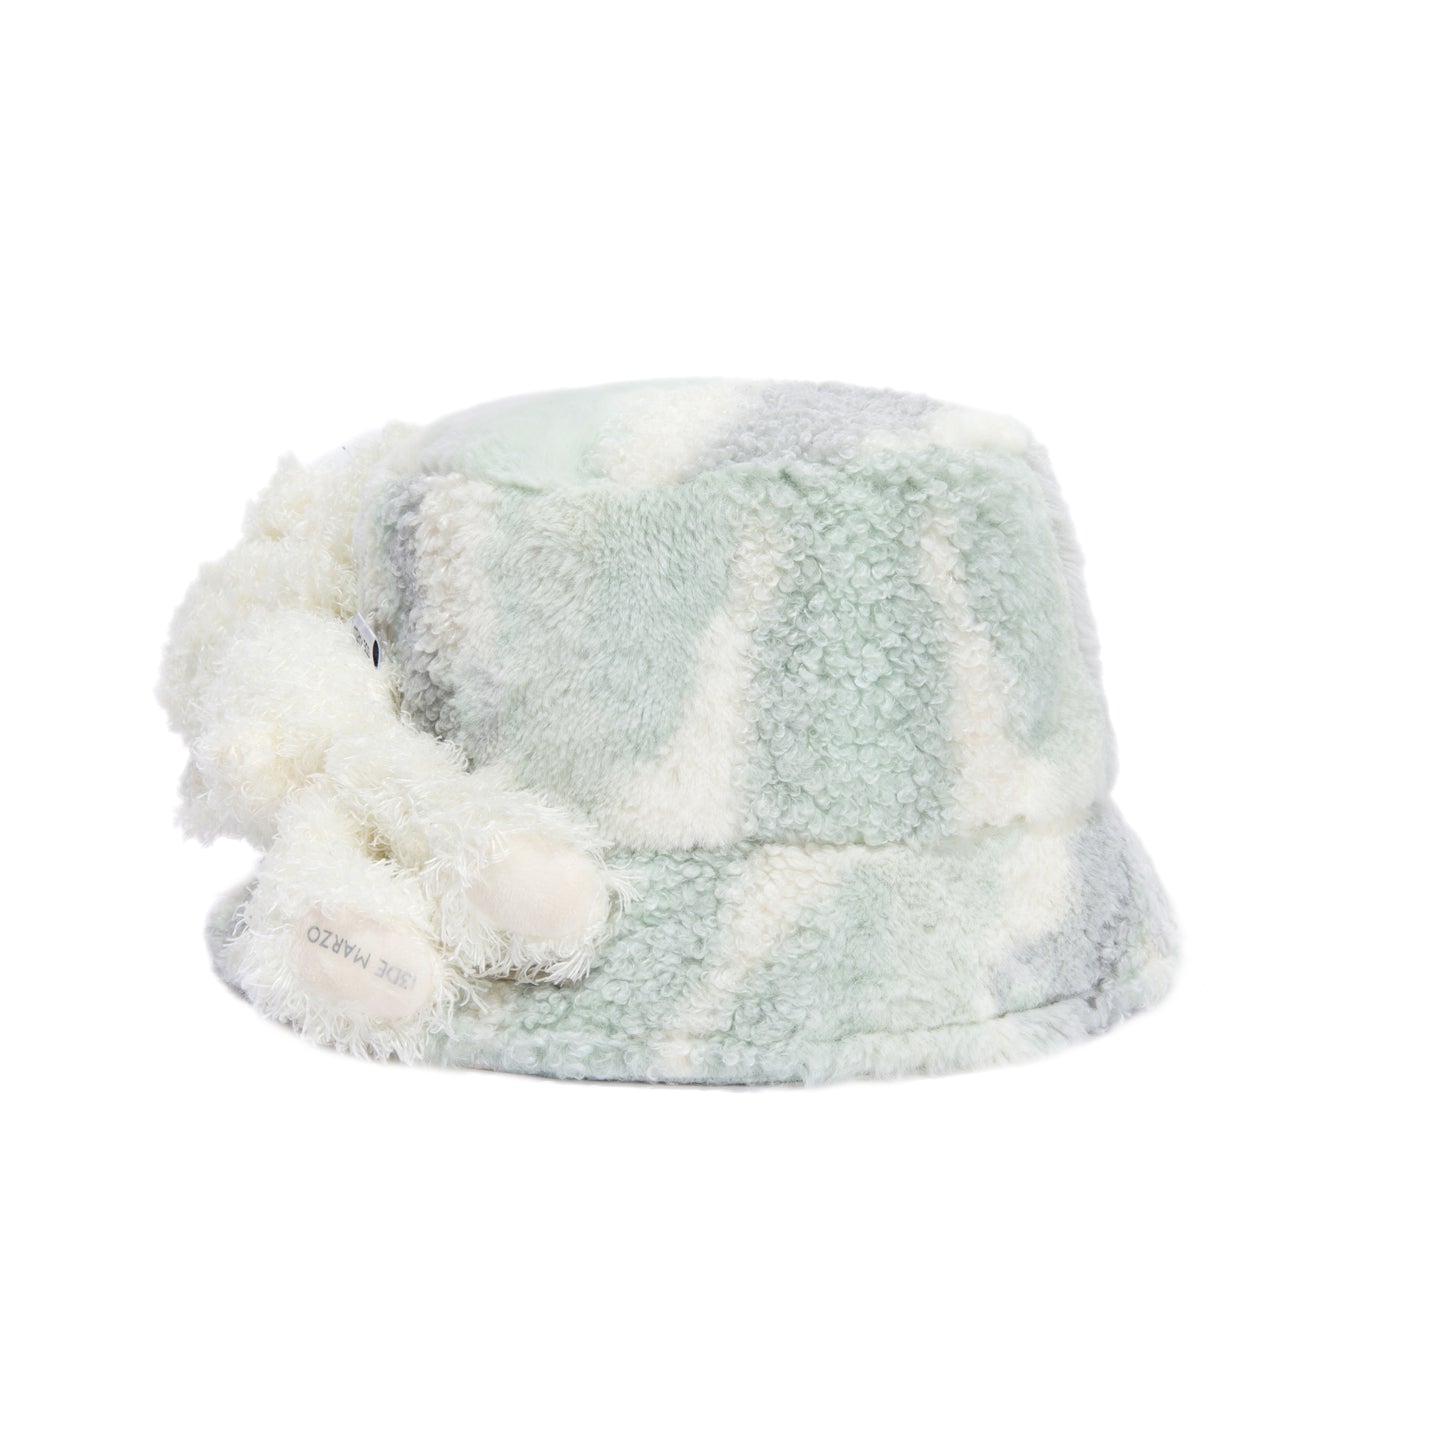 13DE MARZO Furry Marble Bucket Hat